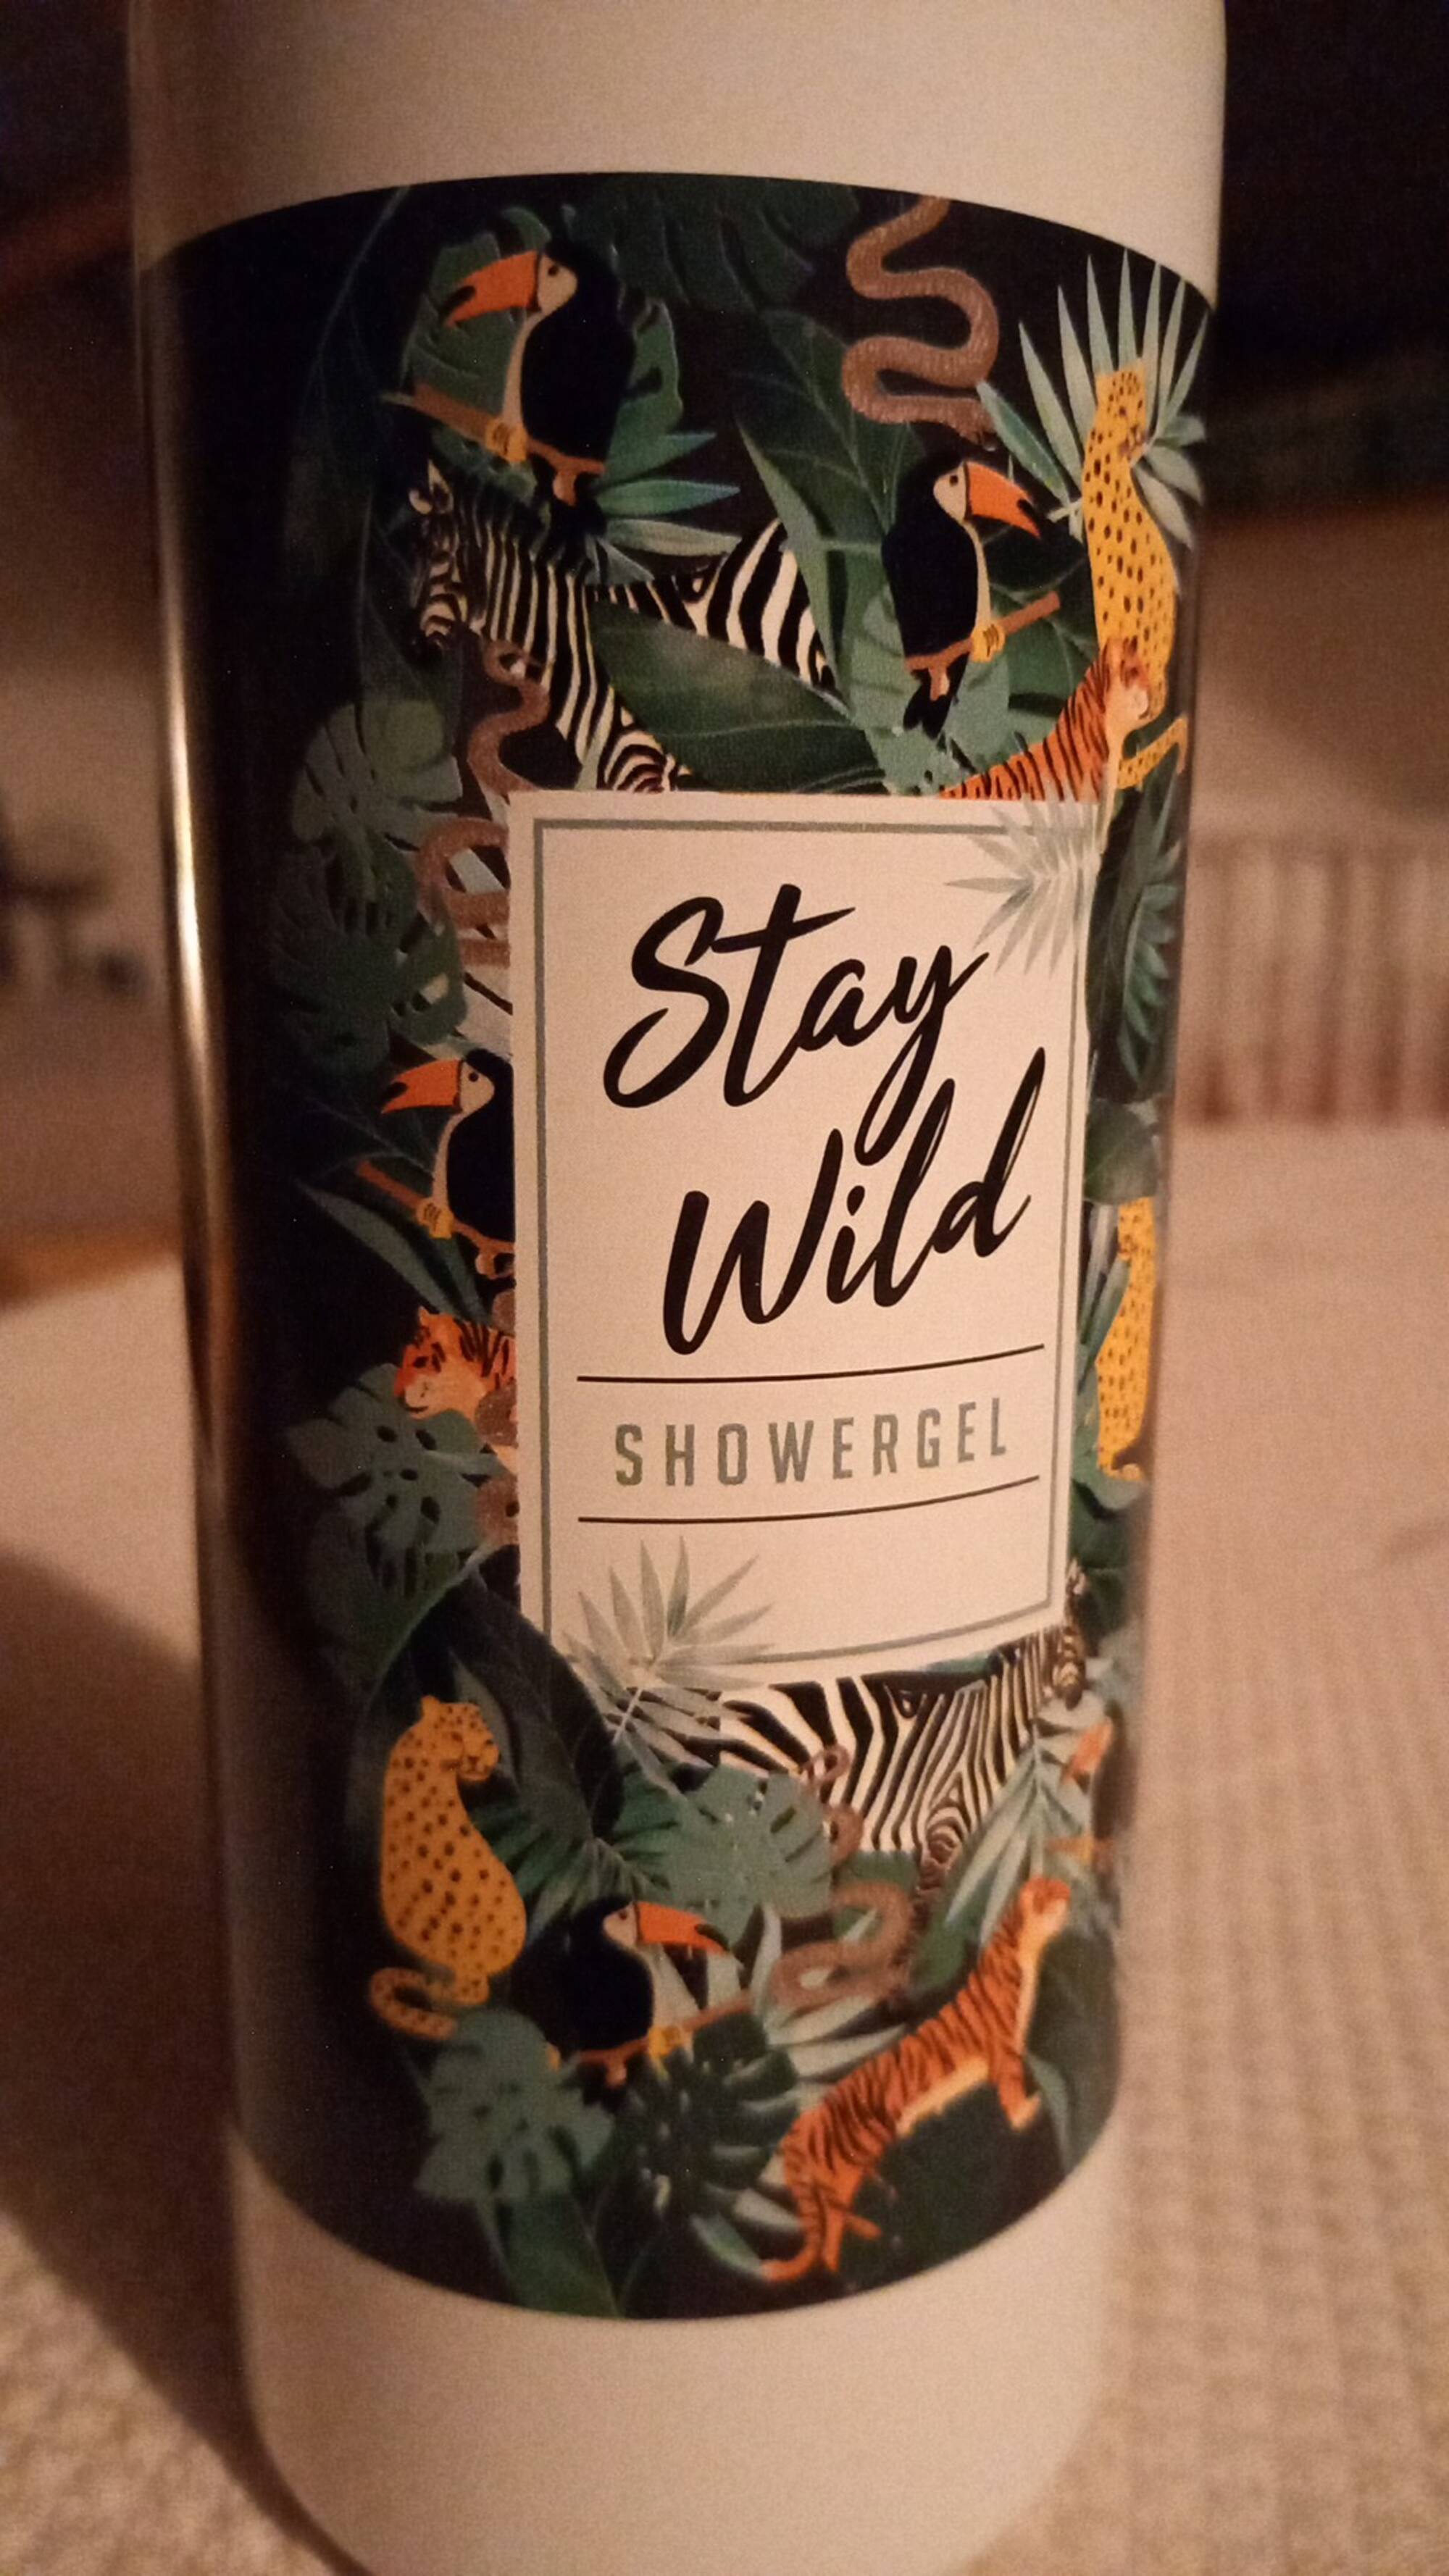 HEGRON - Stay wild - Showergel